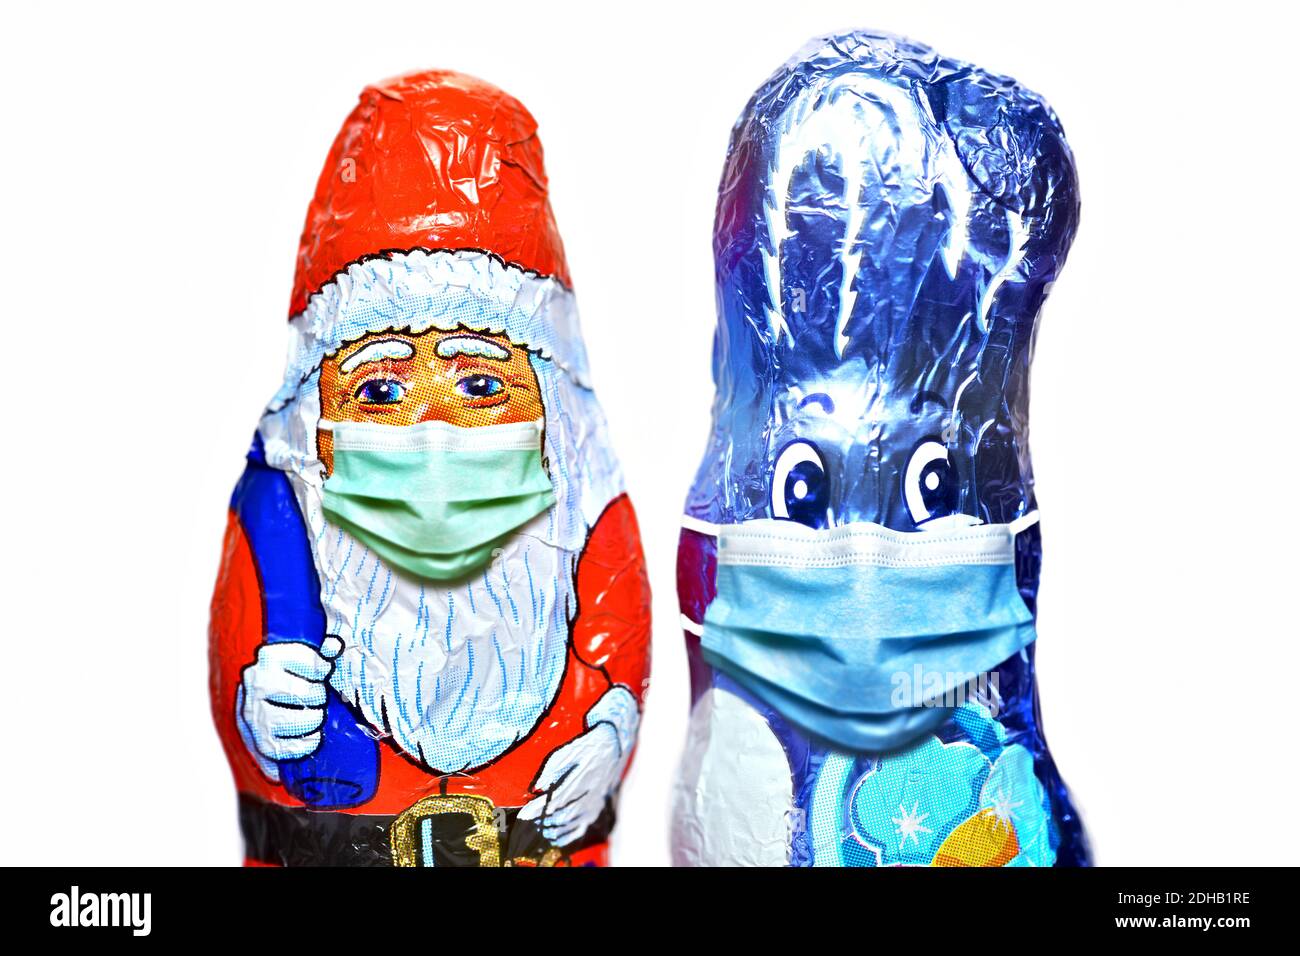 FOTOMONTAGE, Schoko-Weihnachtsmann und Schoko-Osterhase mit Schutzmaske, Weihnachtsfest zu Corona-Zeiten und Corona-Beschränkungen Stock Photo